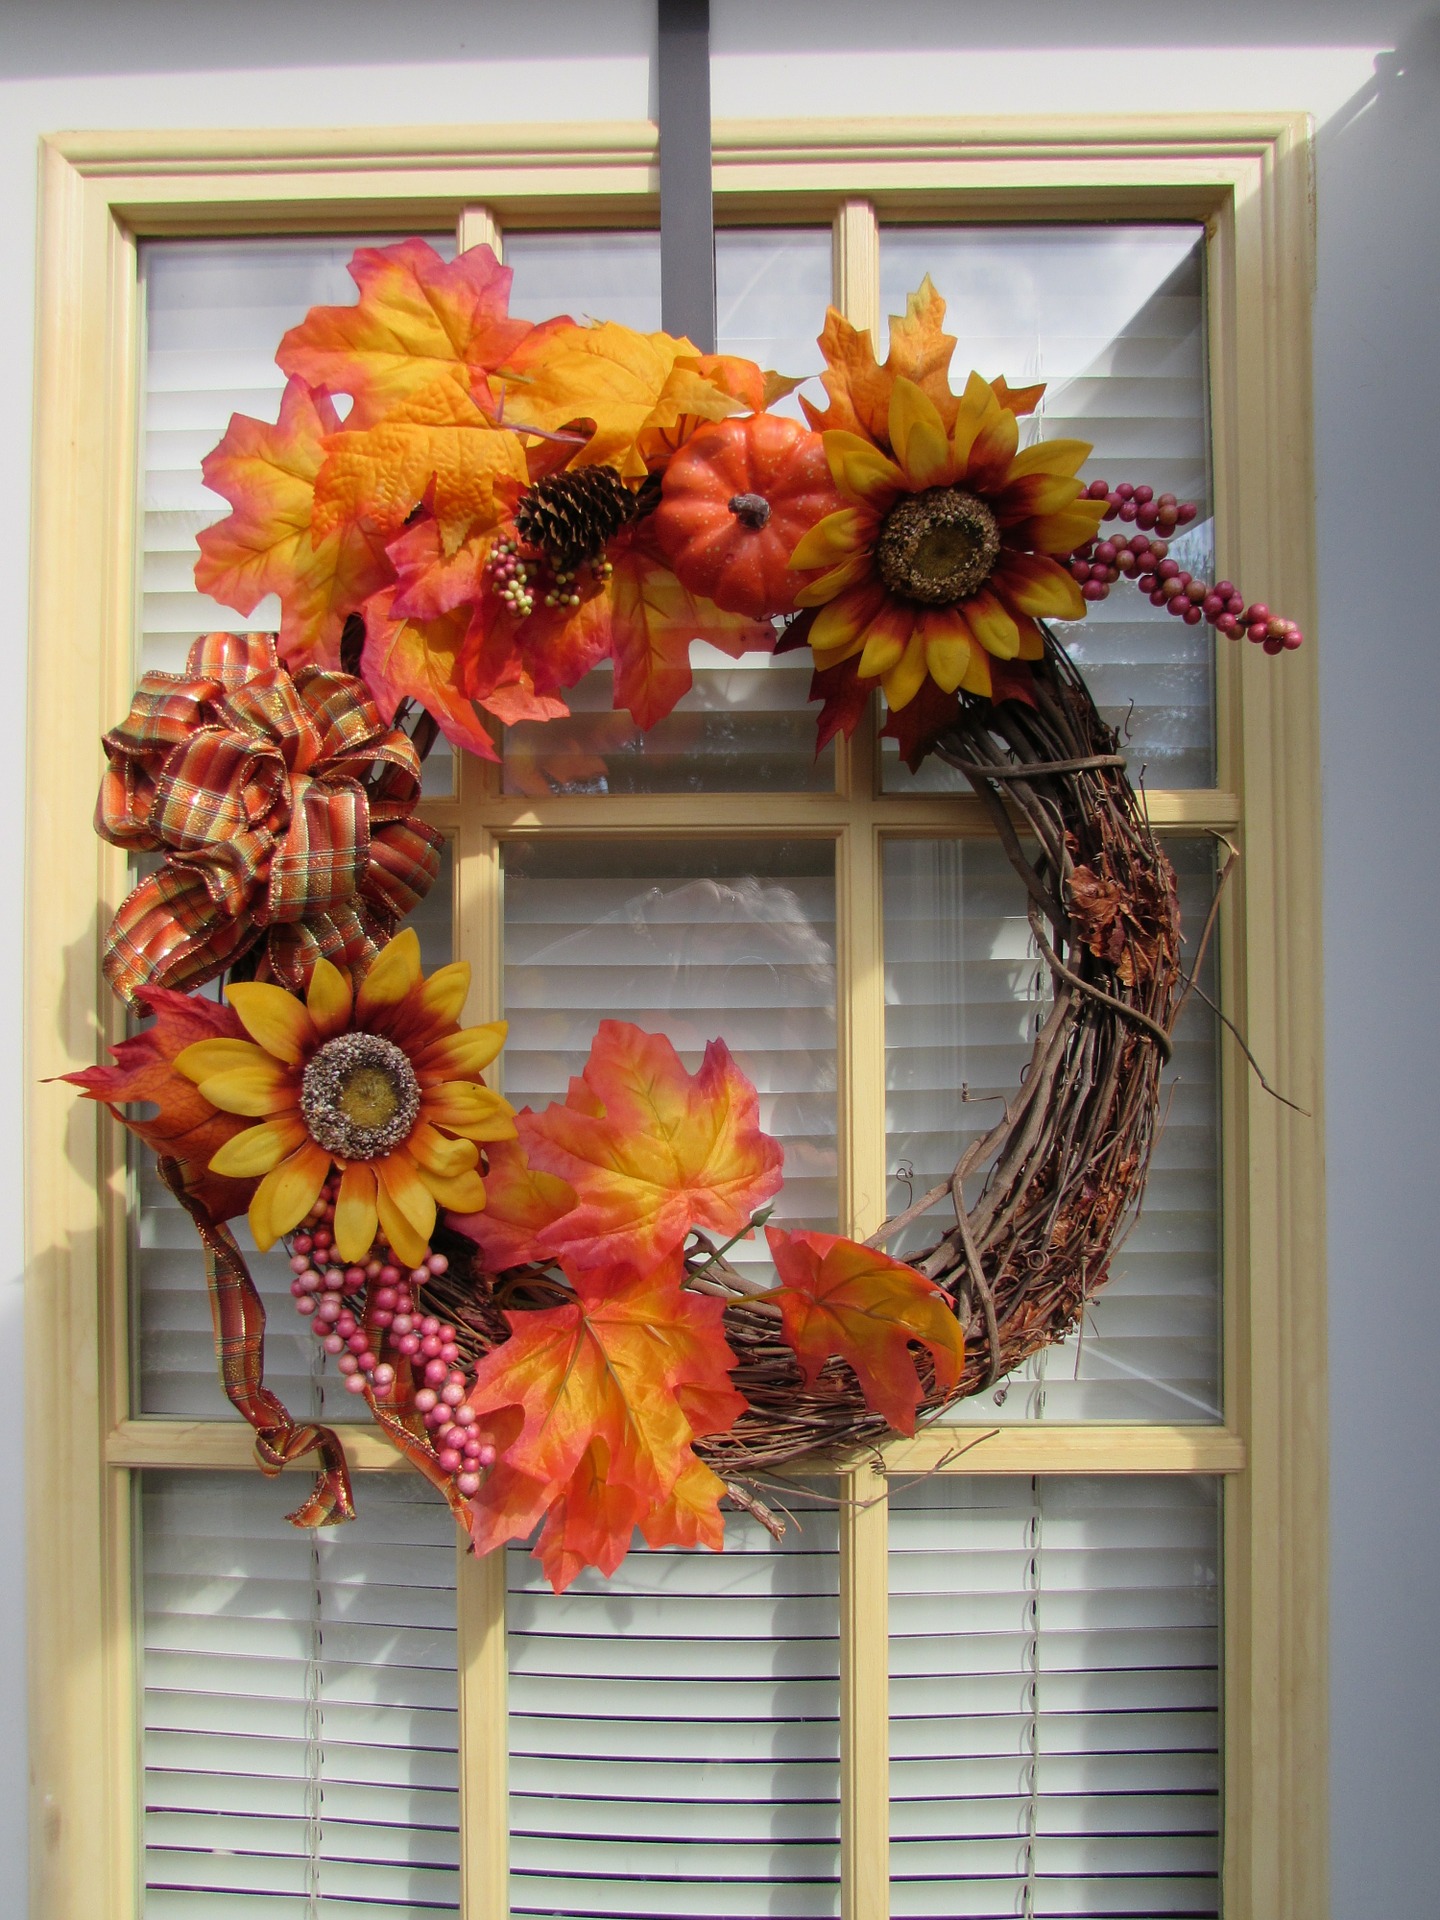 Corona de otoño en una puerta.